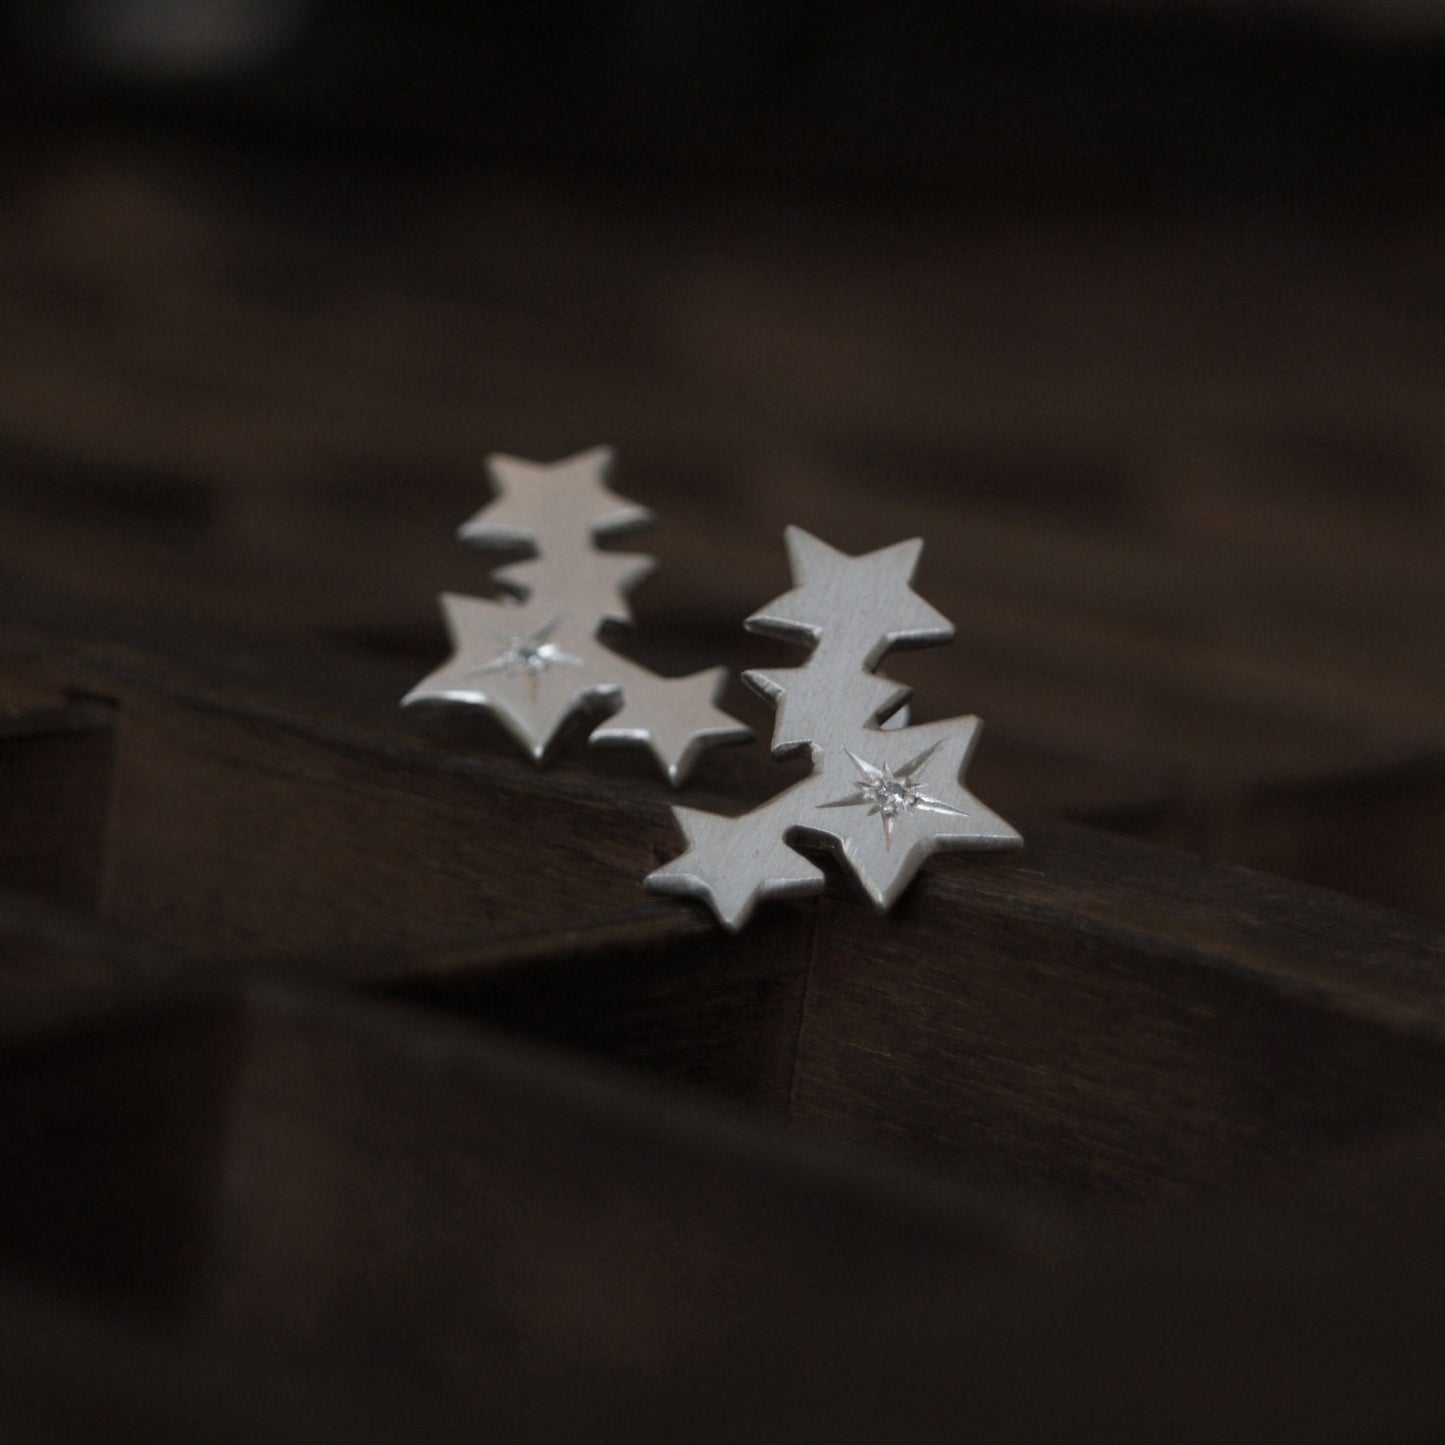 Handmade silver star engraved set diamond four star design stud earrings